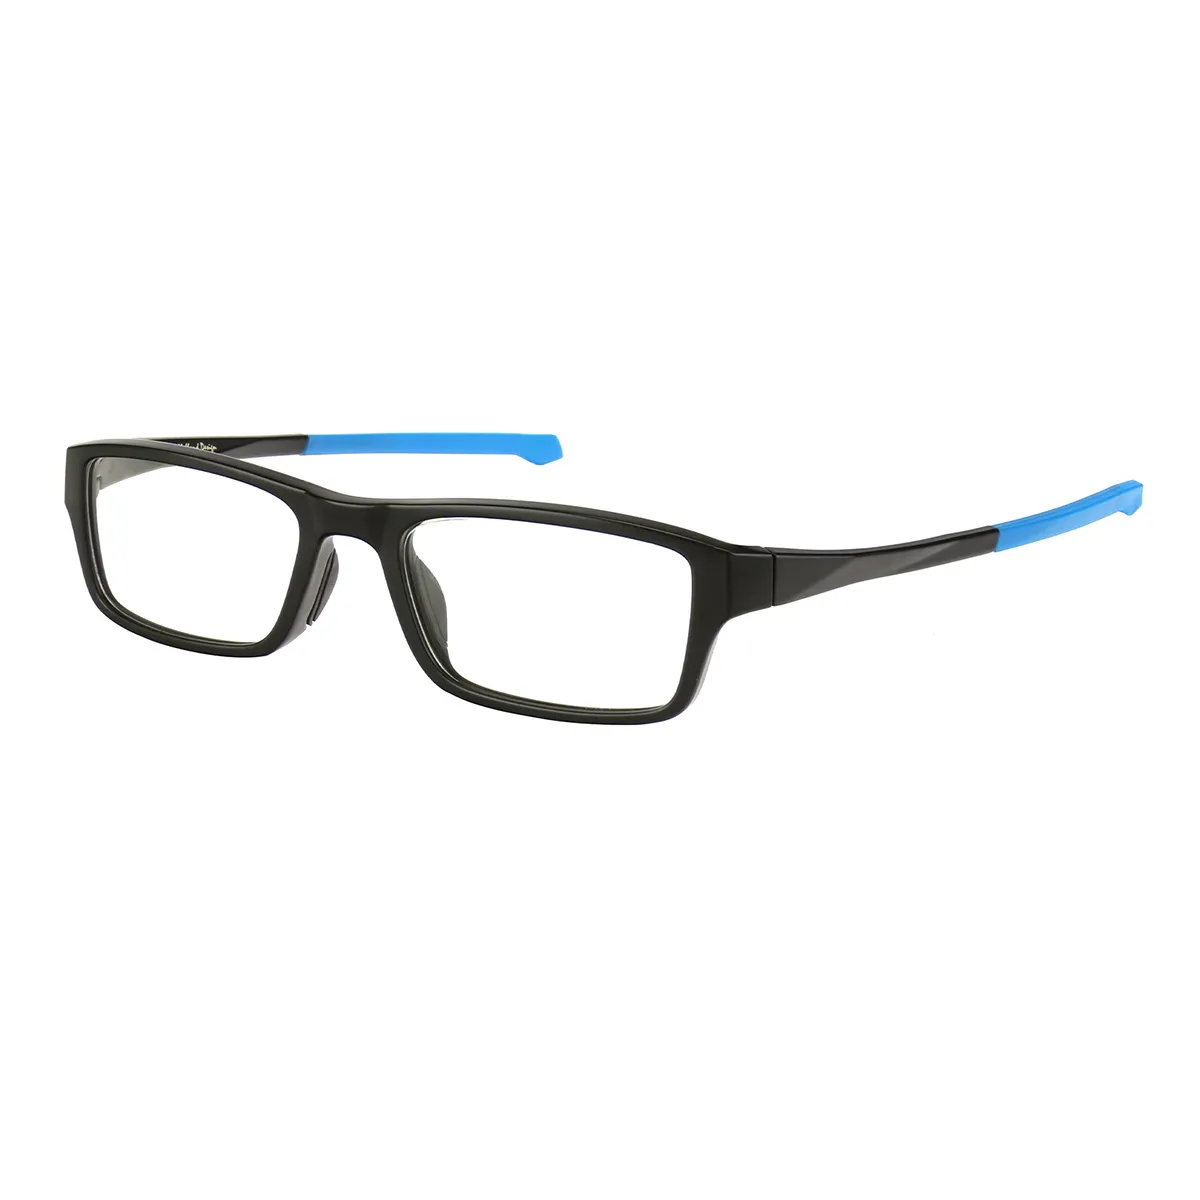 Sports Rectangle Black-Blue Glasses for Men & Women